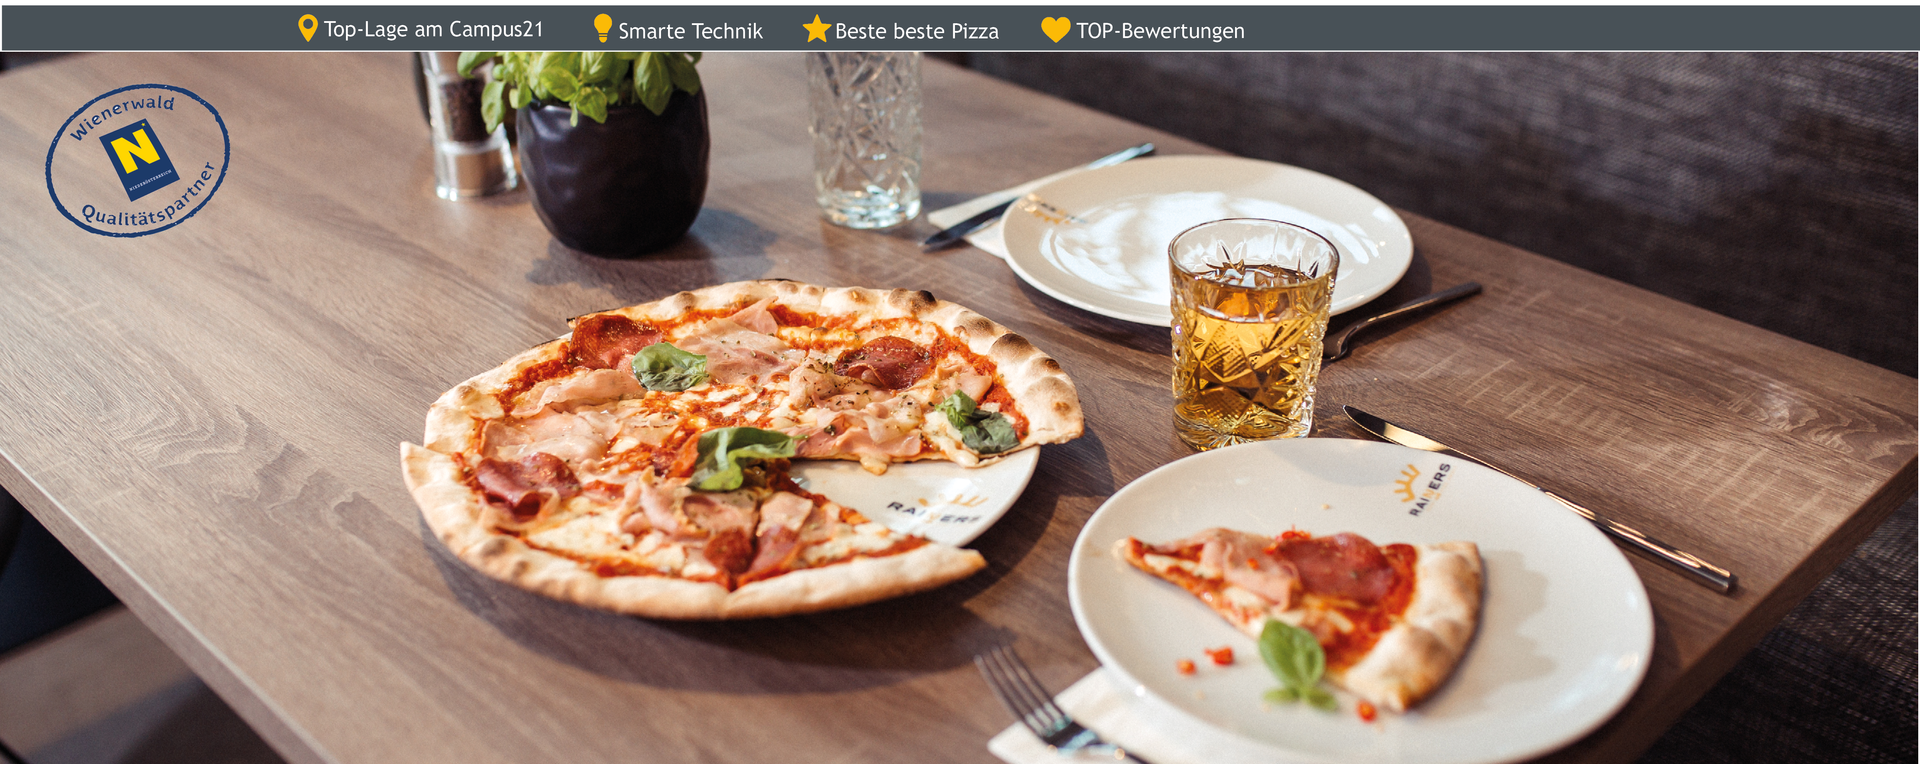 Eine Pizza Margharita mit einer schnitte auf dem Teller und einem Glas Eistee neben dem Teller im Rainers21 Restaurant Ventuno 